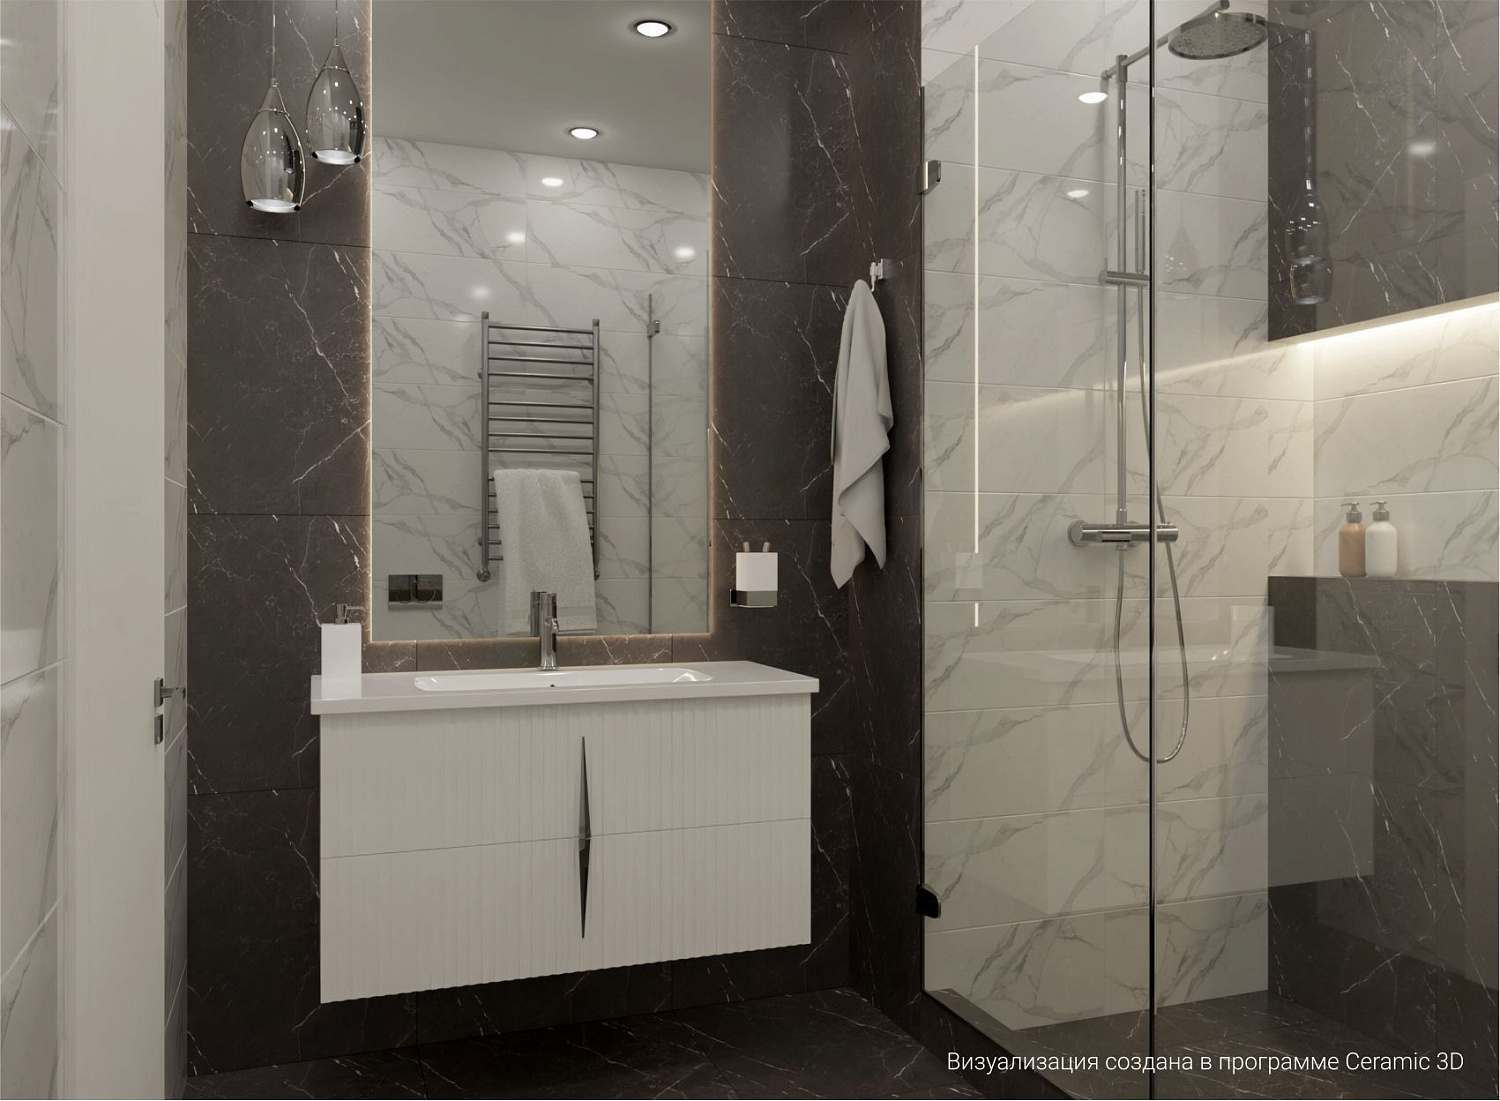 Мебель для ванных комнат CAPRIGO - новинка в каталоге Ceramic 3D 